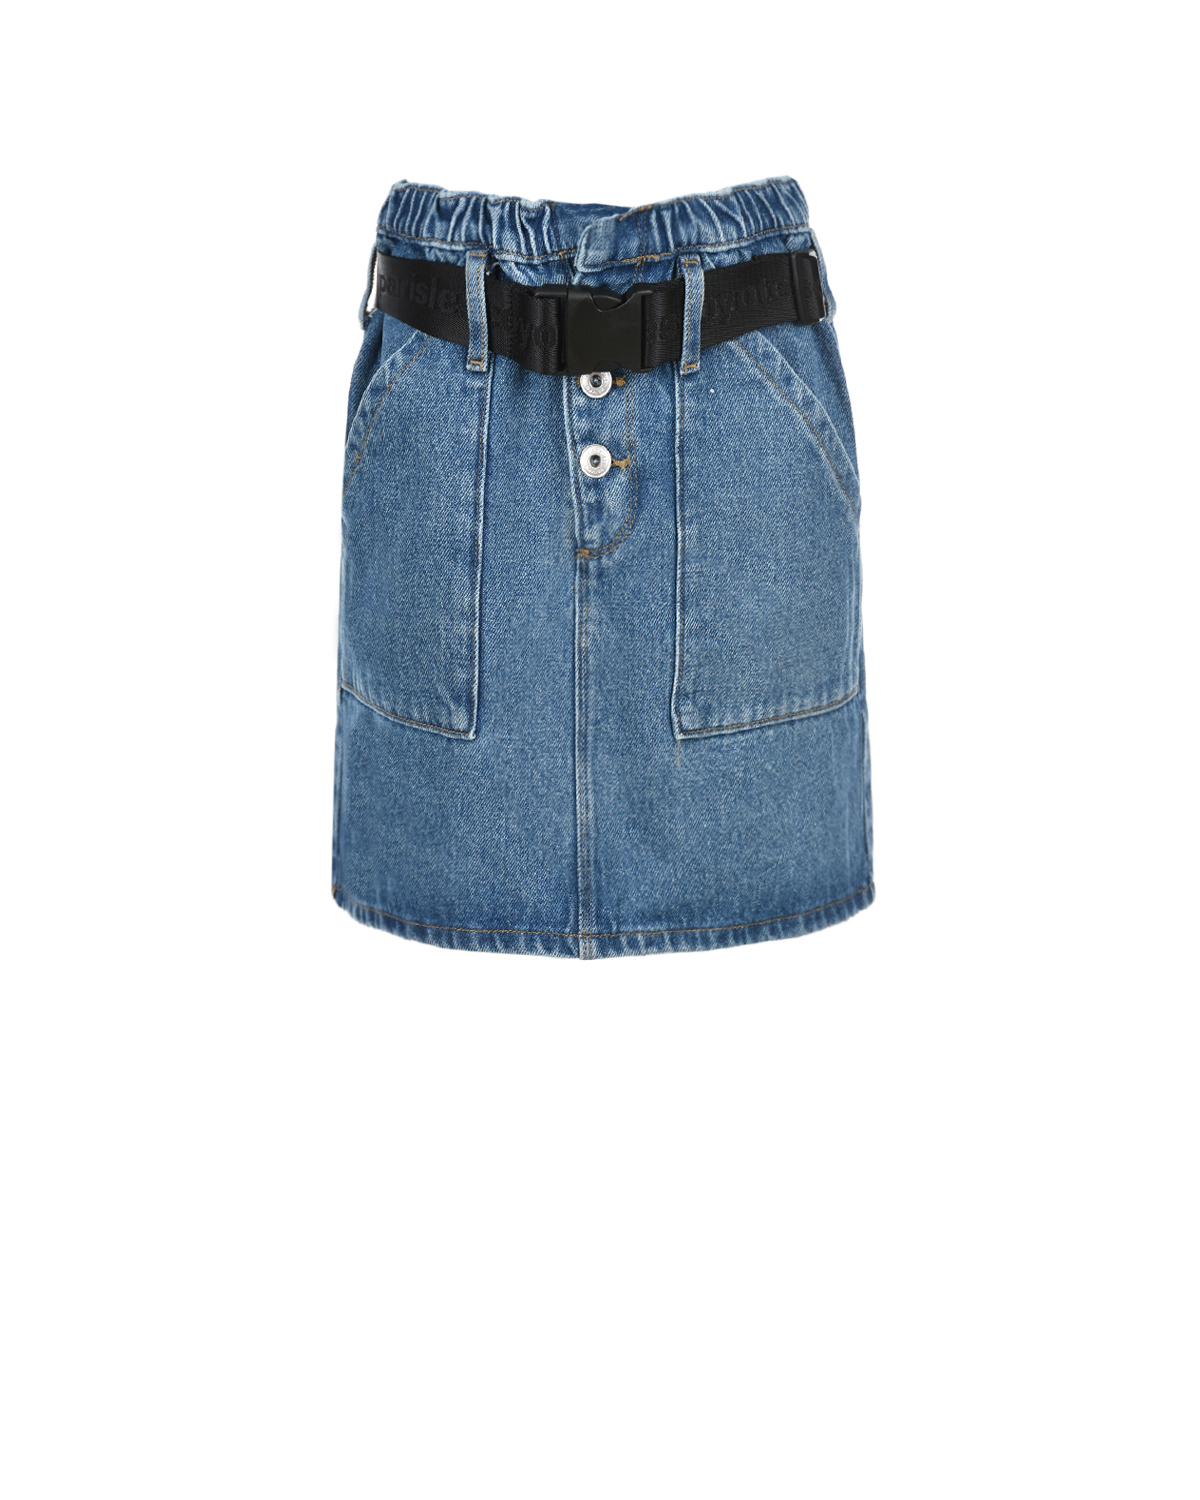 Голубая джинсовая юбка с поясом Les Coyotes de Paris детская, размер 152, цвет синий - фото 1